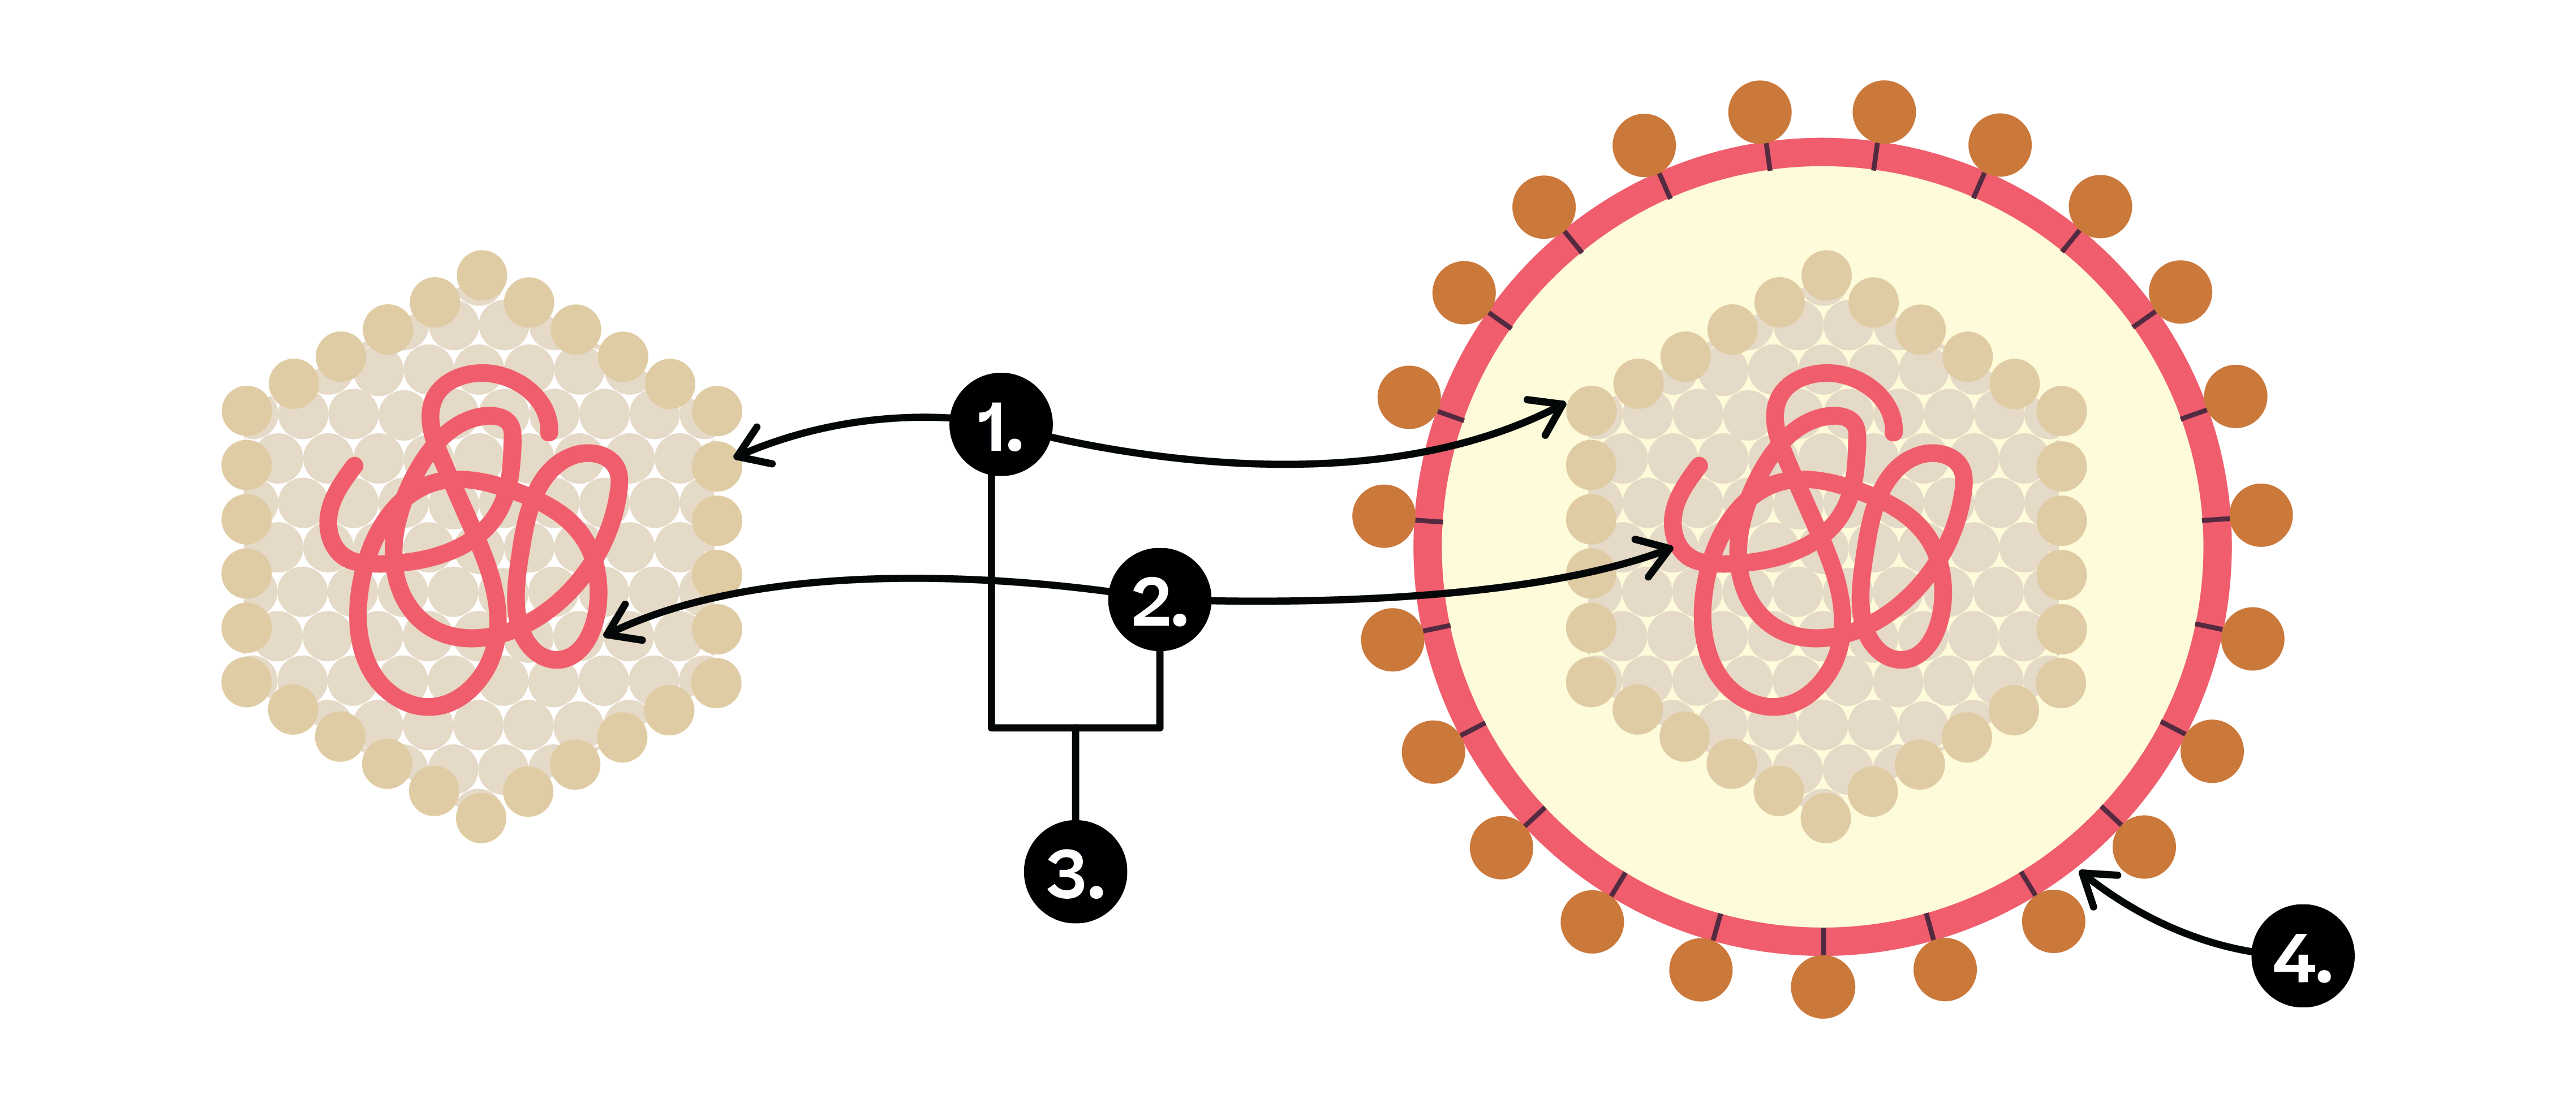 Biologie; Immunsystem; 1. Sek / Bez / Real; Viren - Aufbau, Vermehrung, Grippeverlauf